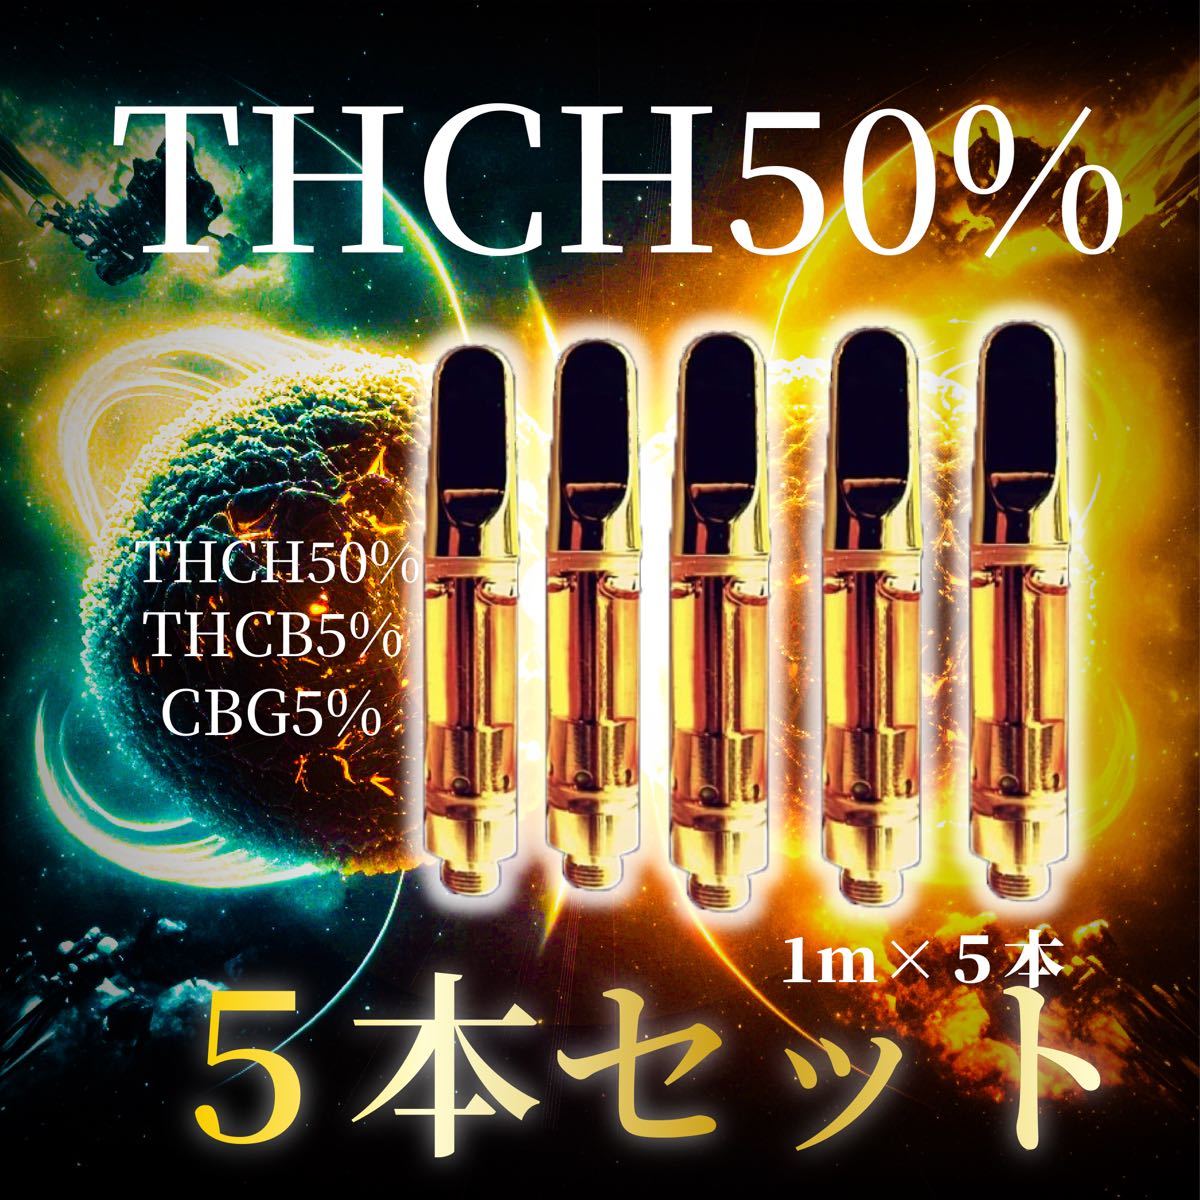 HHCH 35% THCH 10% CBNete 1ml リキッド